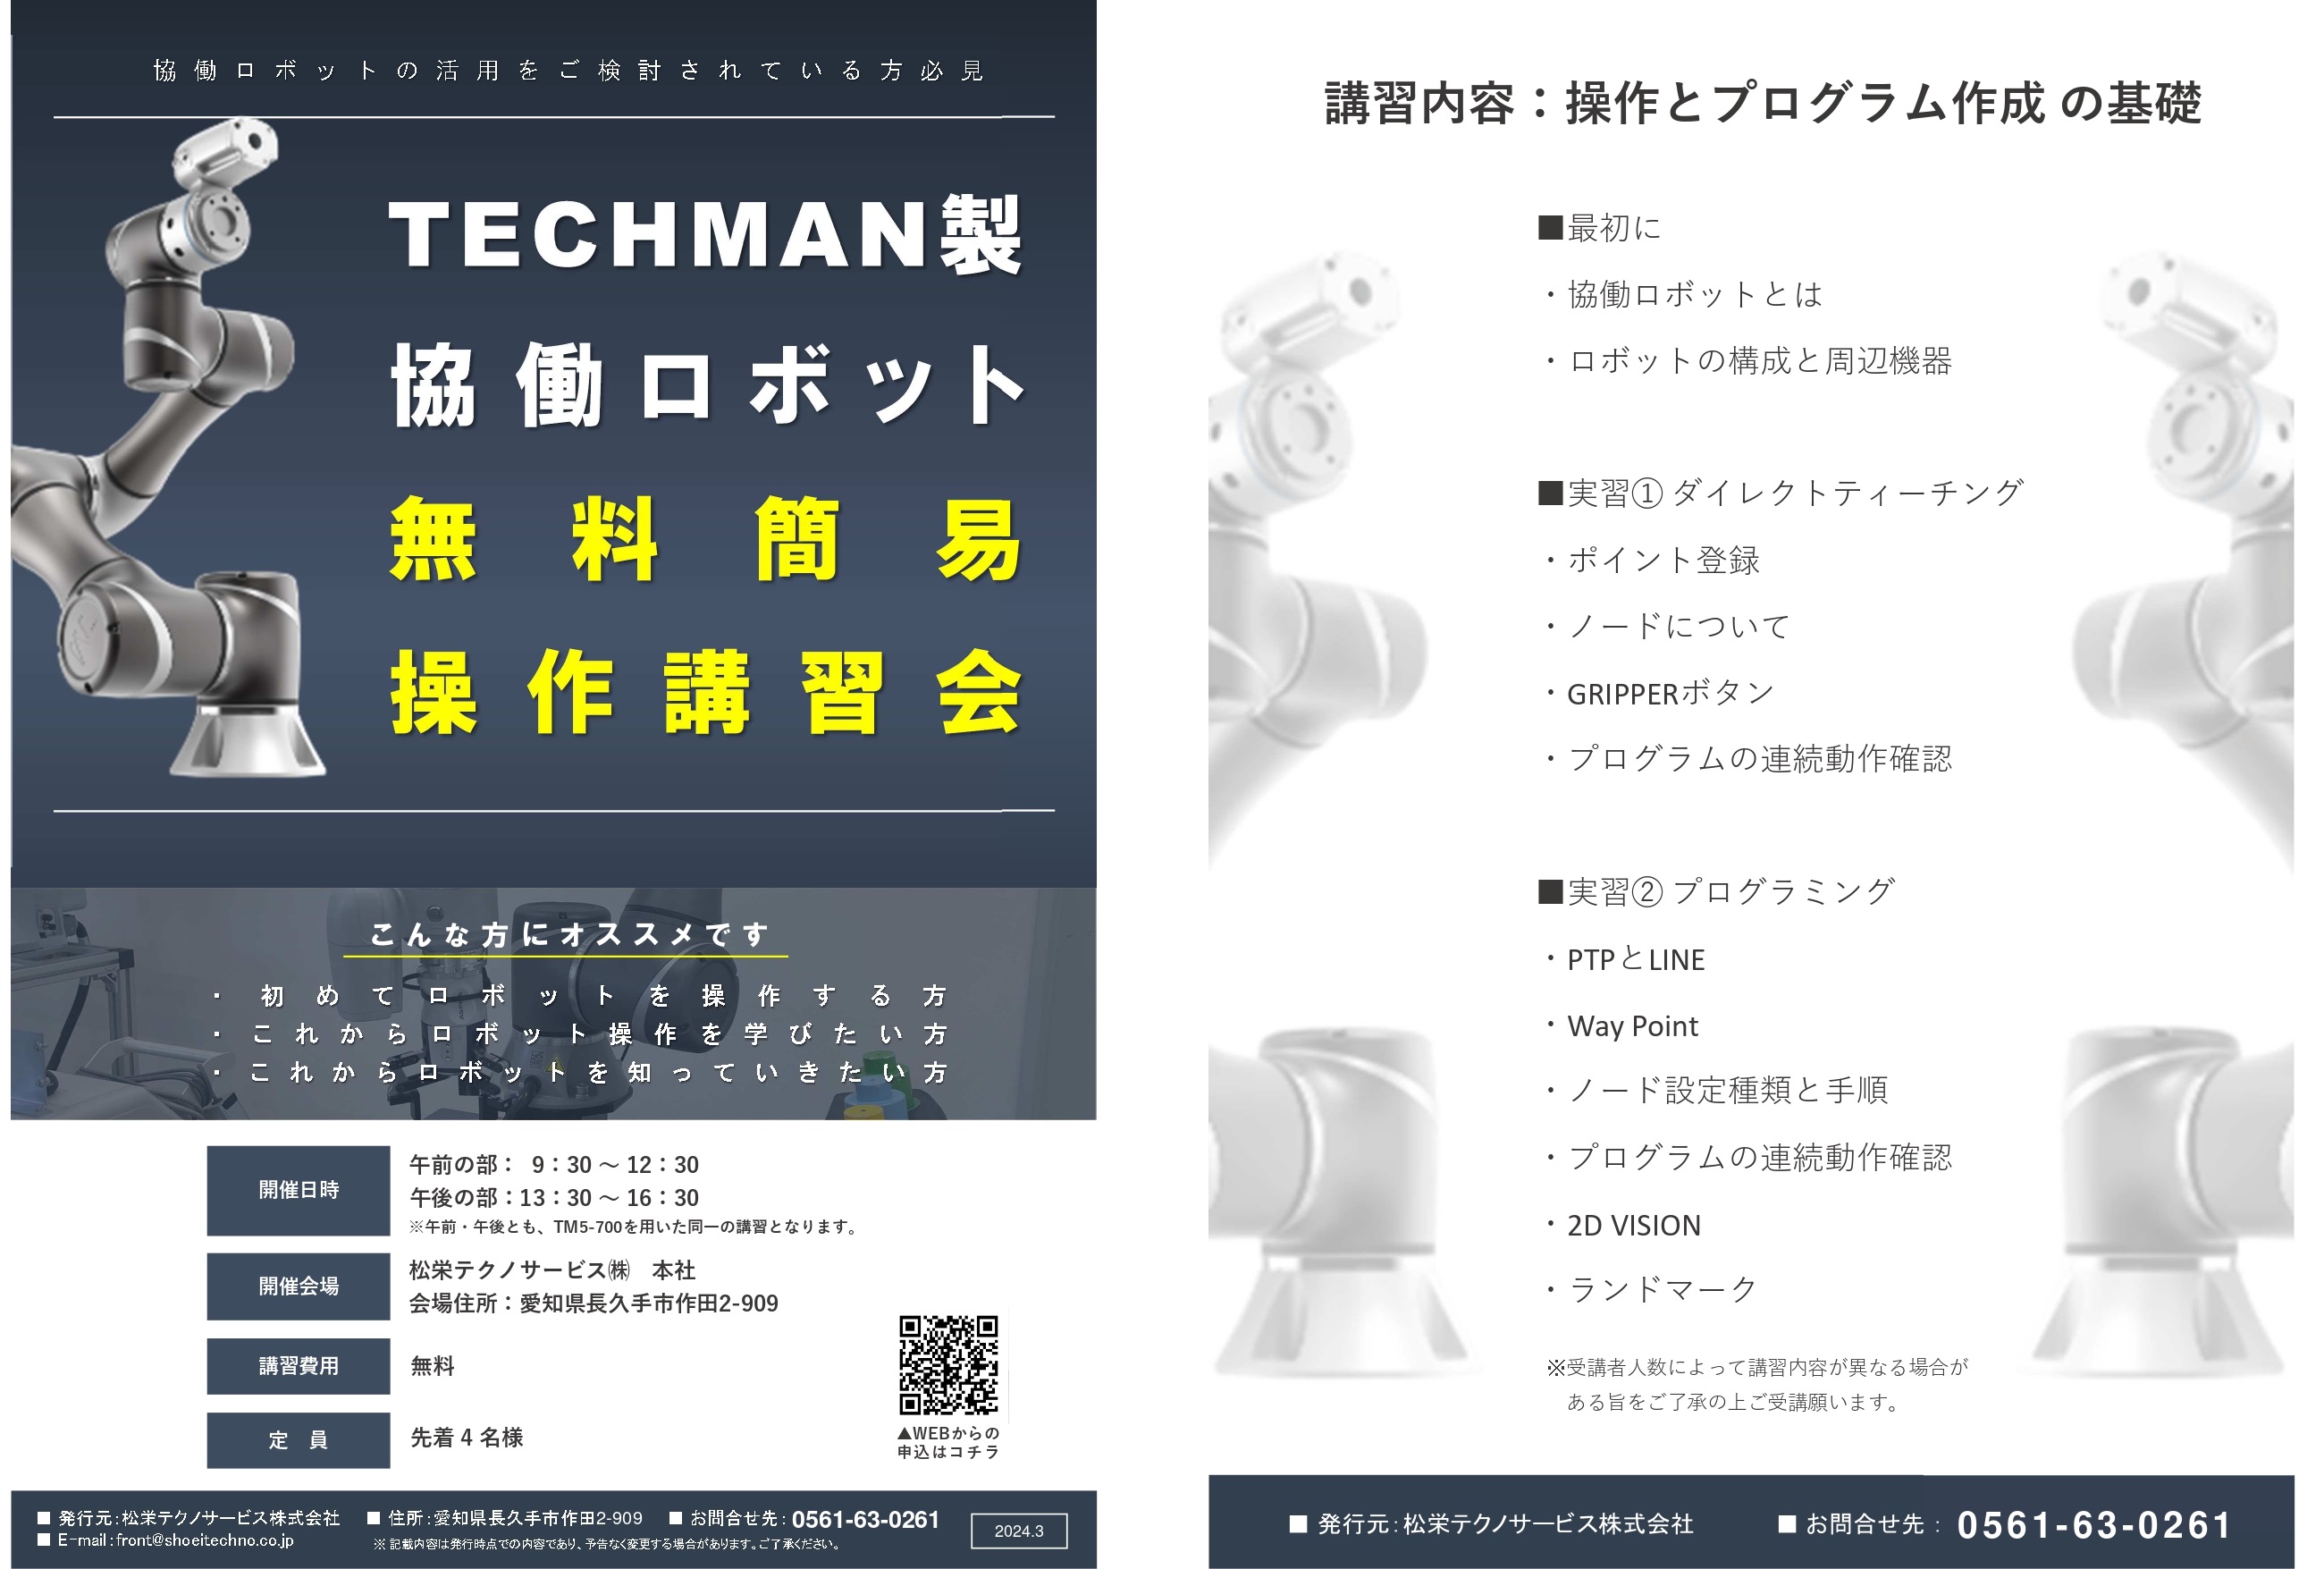 協働ロボットTECHMAN　無料簡易操作講習会開催のお知らせ アイキャッチ